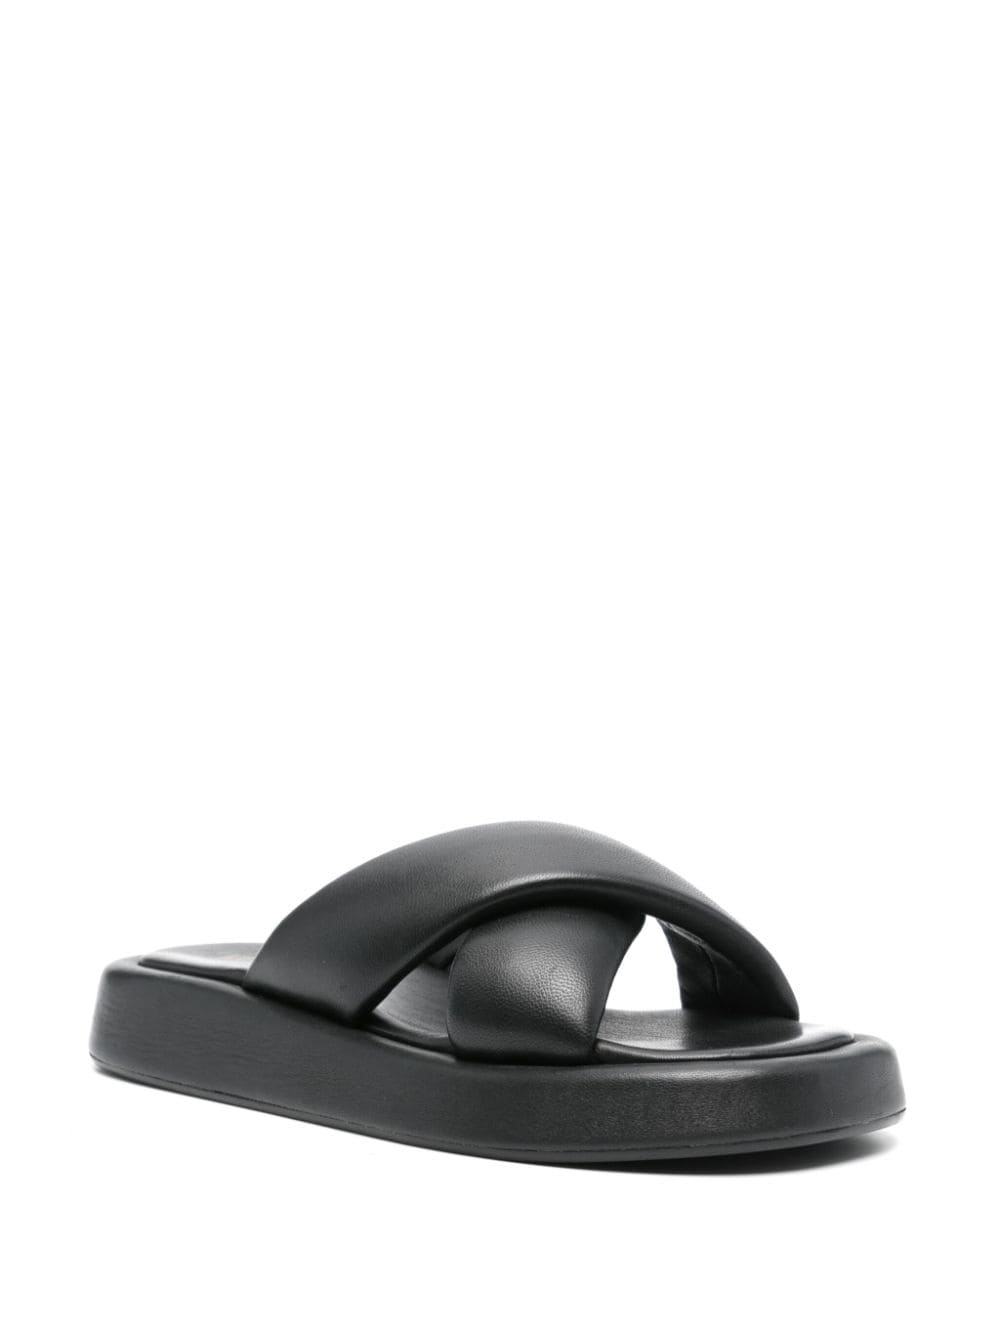 VAMSKO Pillow padded leather sandals - Zwart